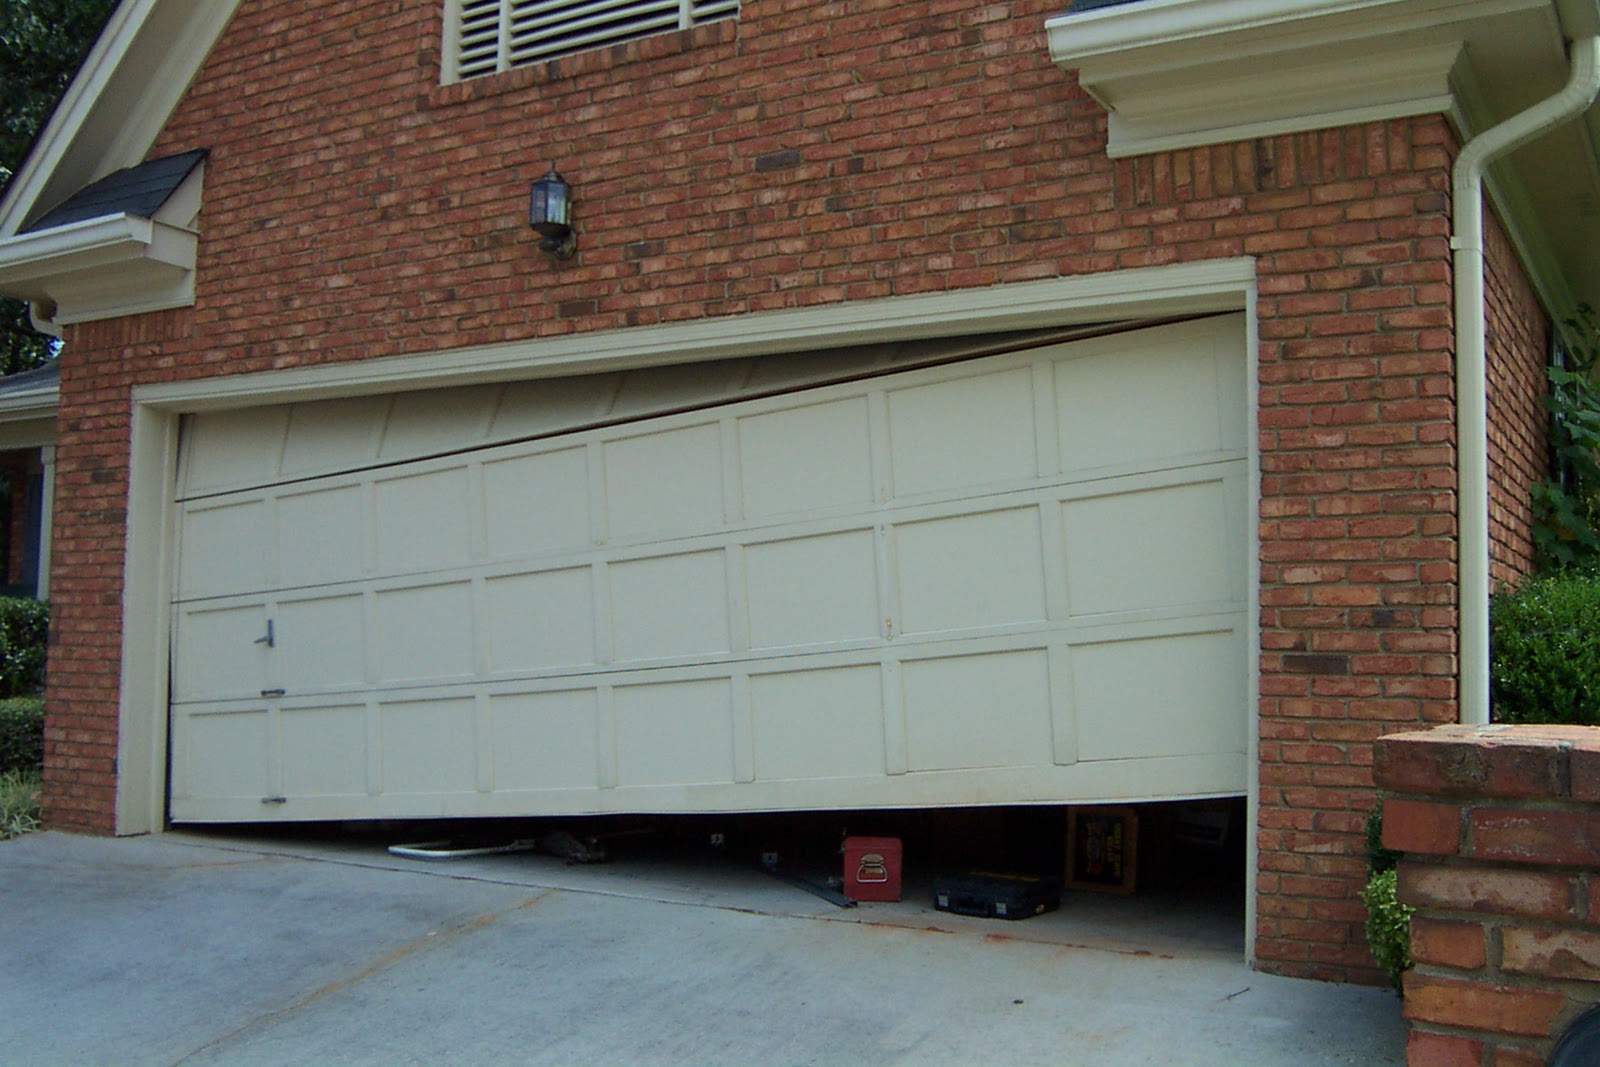 Garage Door Company Cerritos Ca, A Quality Garage Doors (714) 523-7900 - Garage+Door+off+the+tracks